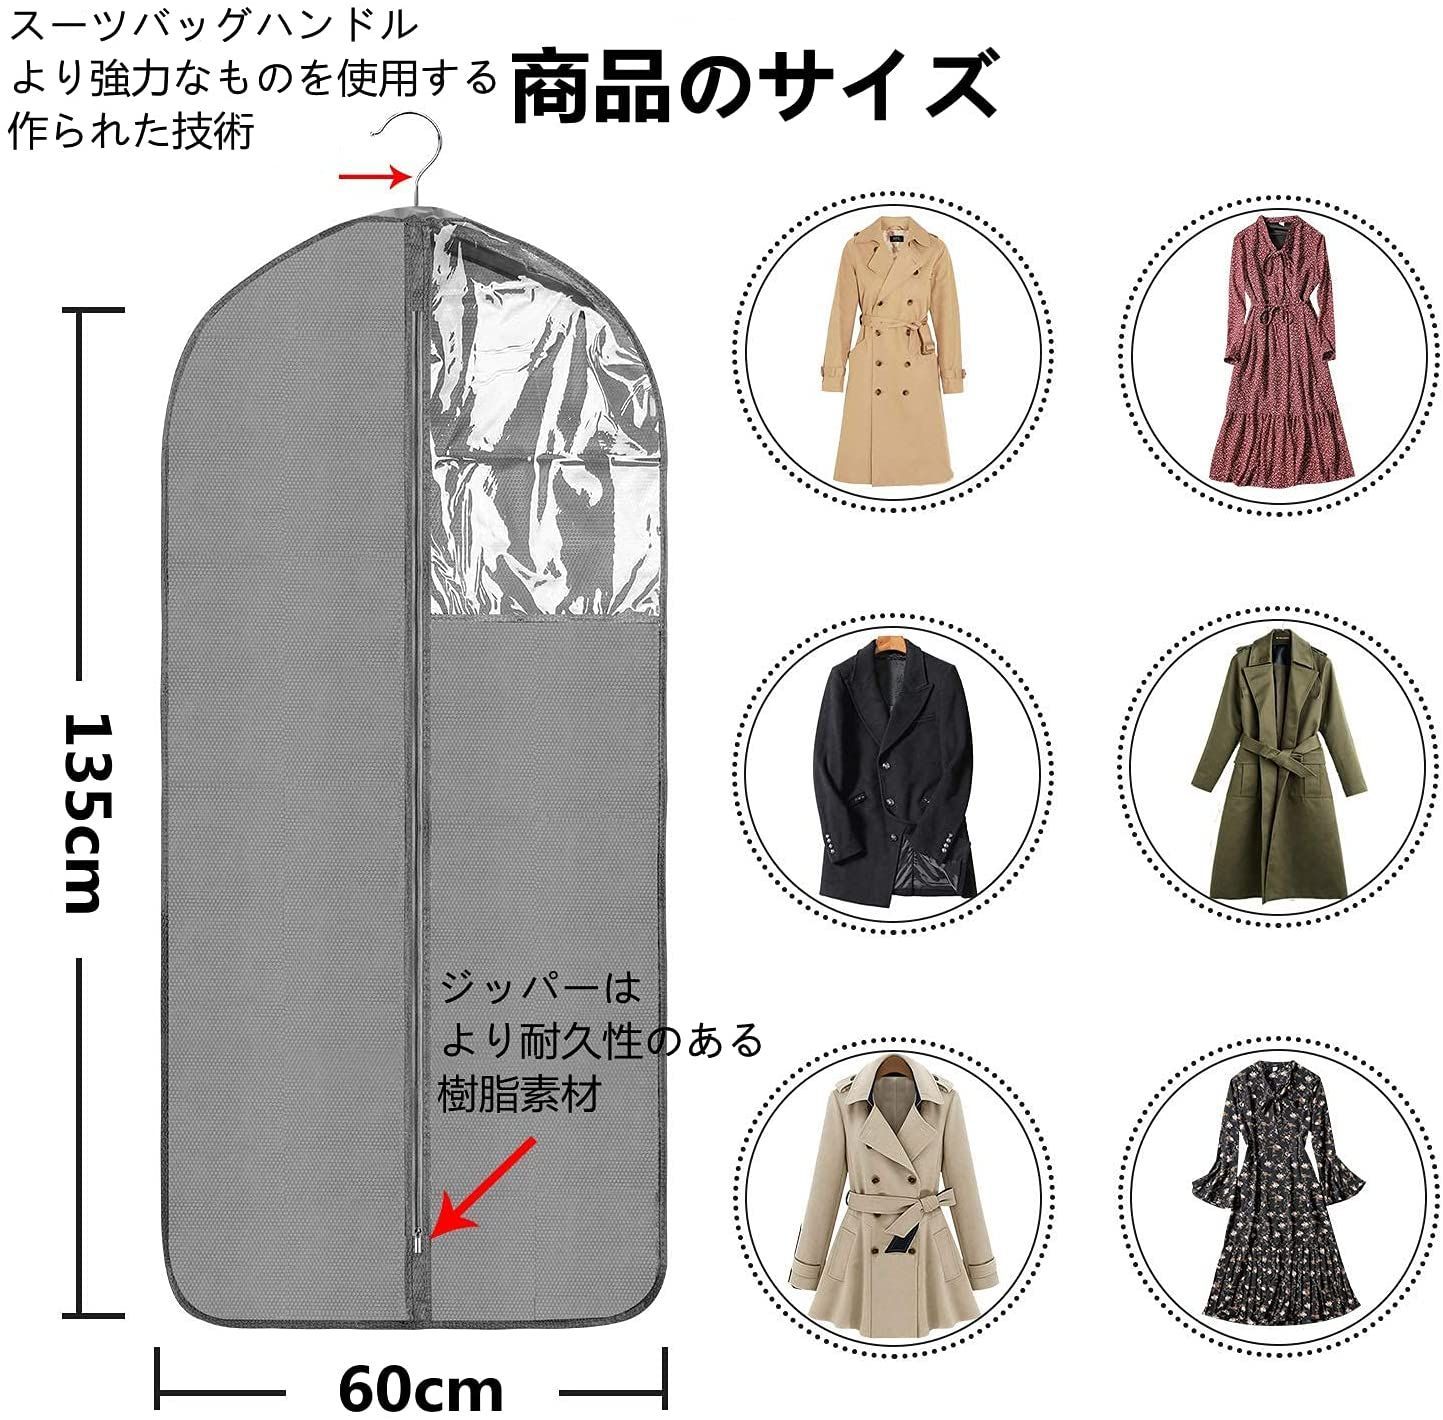 ガーメントカバー スーツカバー 洋服カバー (2pcs 135 60cm) メルカリShops